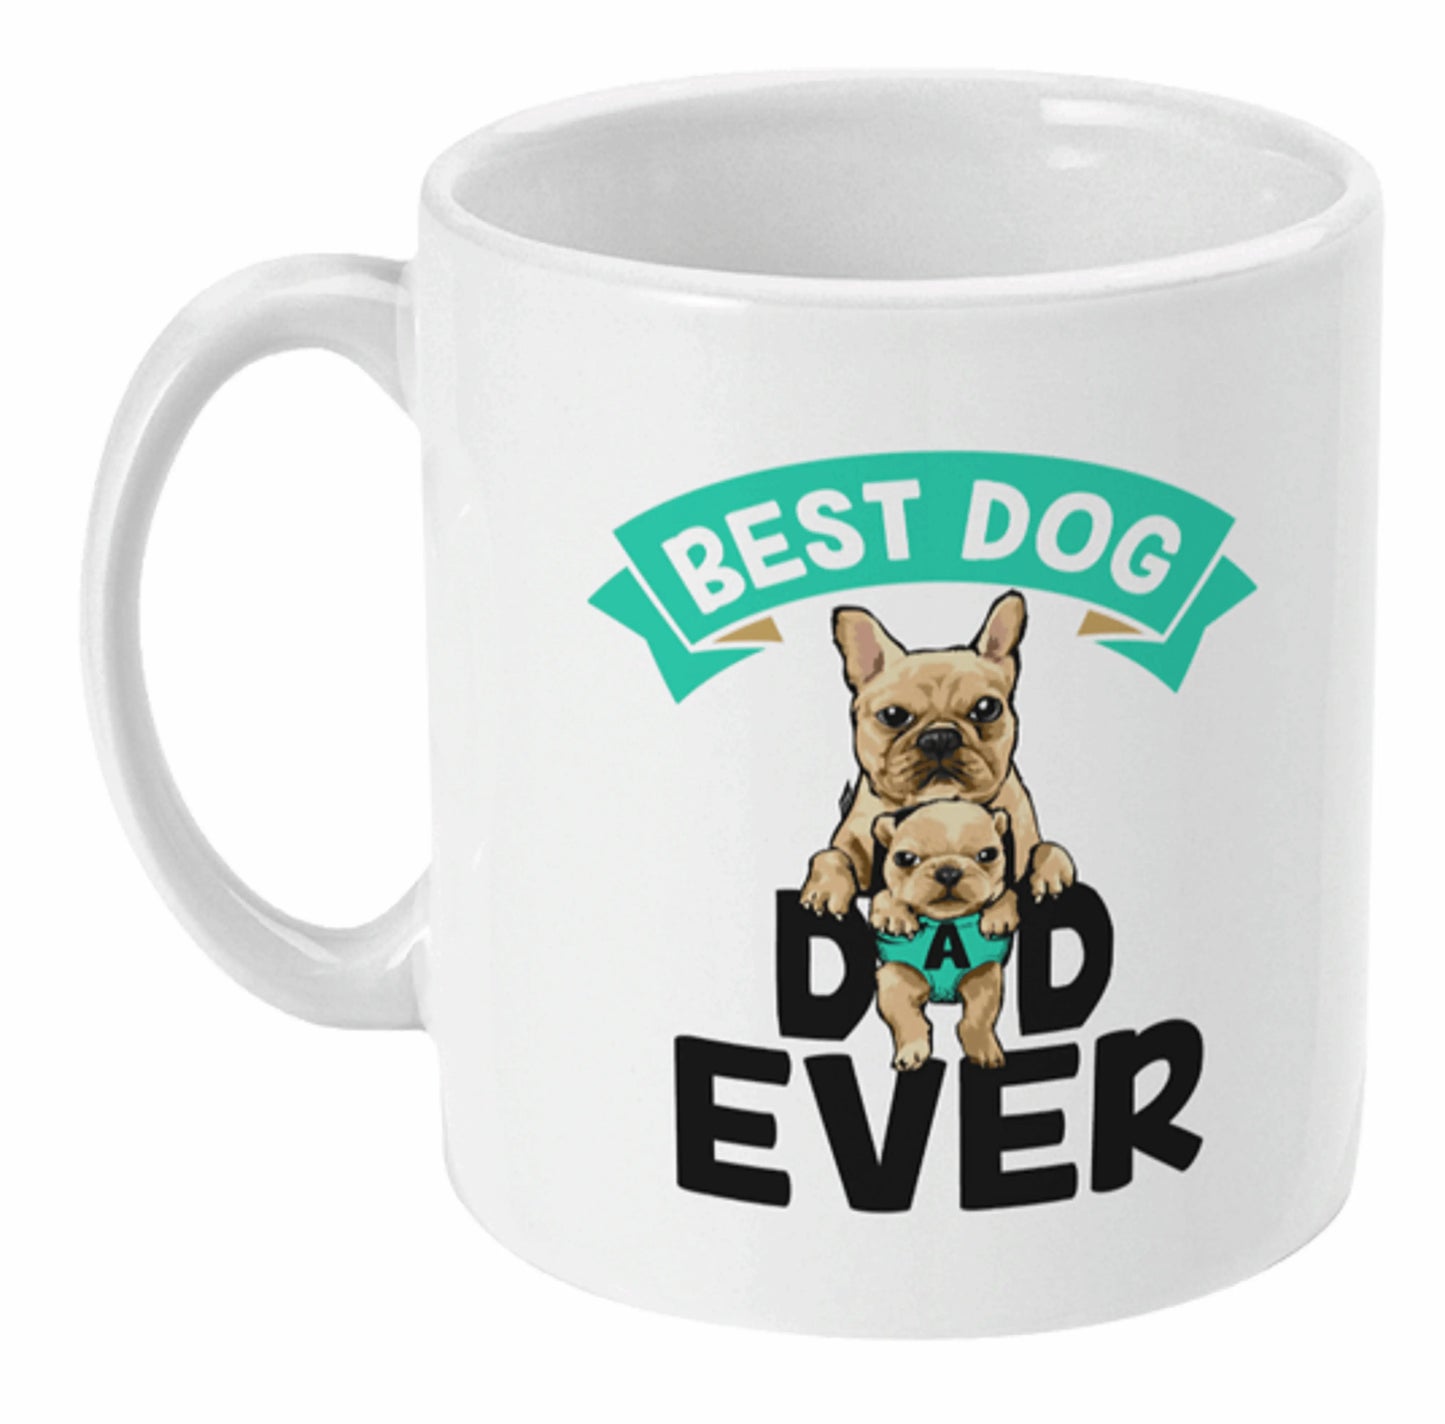  Best Dog Dad Ever French Bulldog Mug by Free Spirit Accessories sold by Free Spirit Accessories